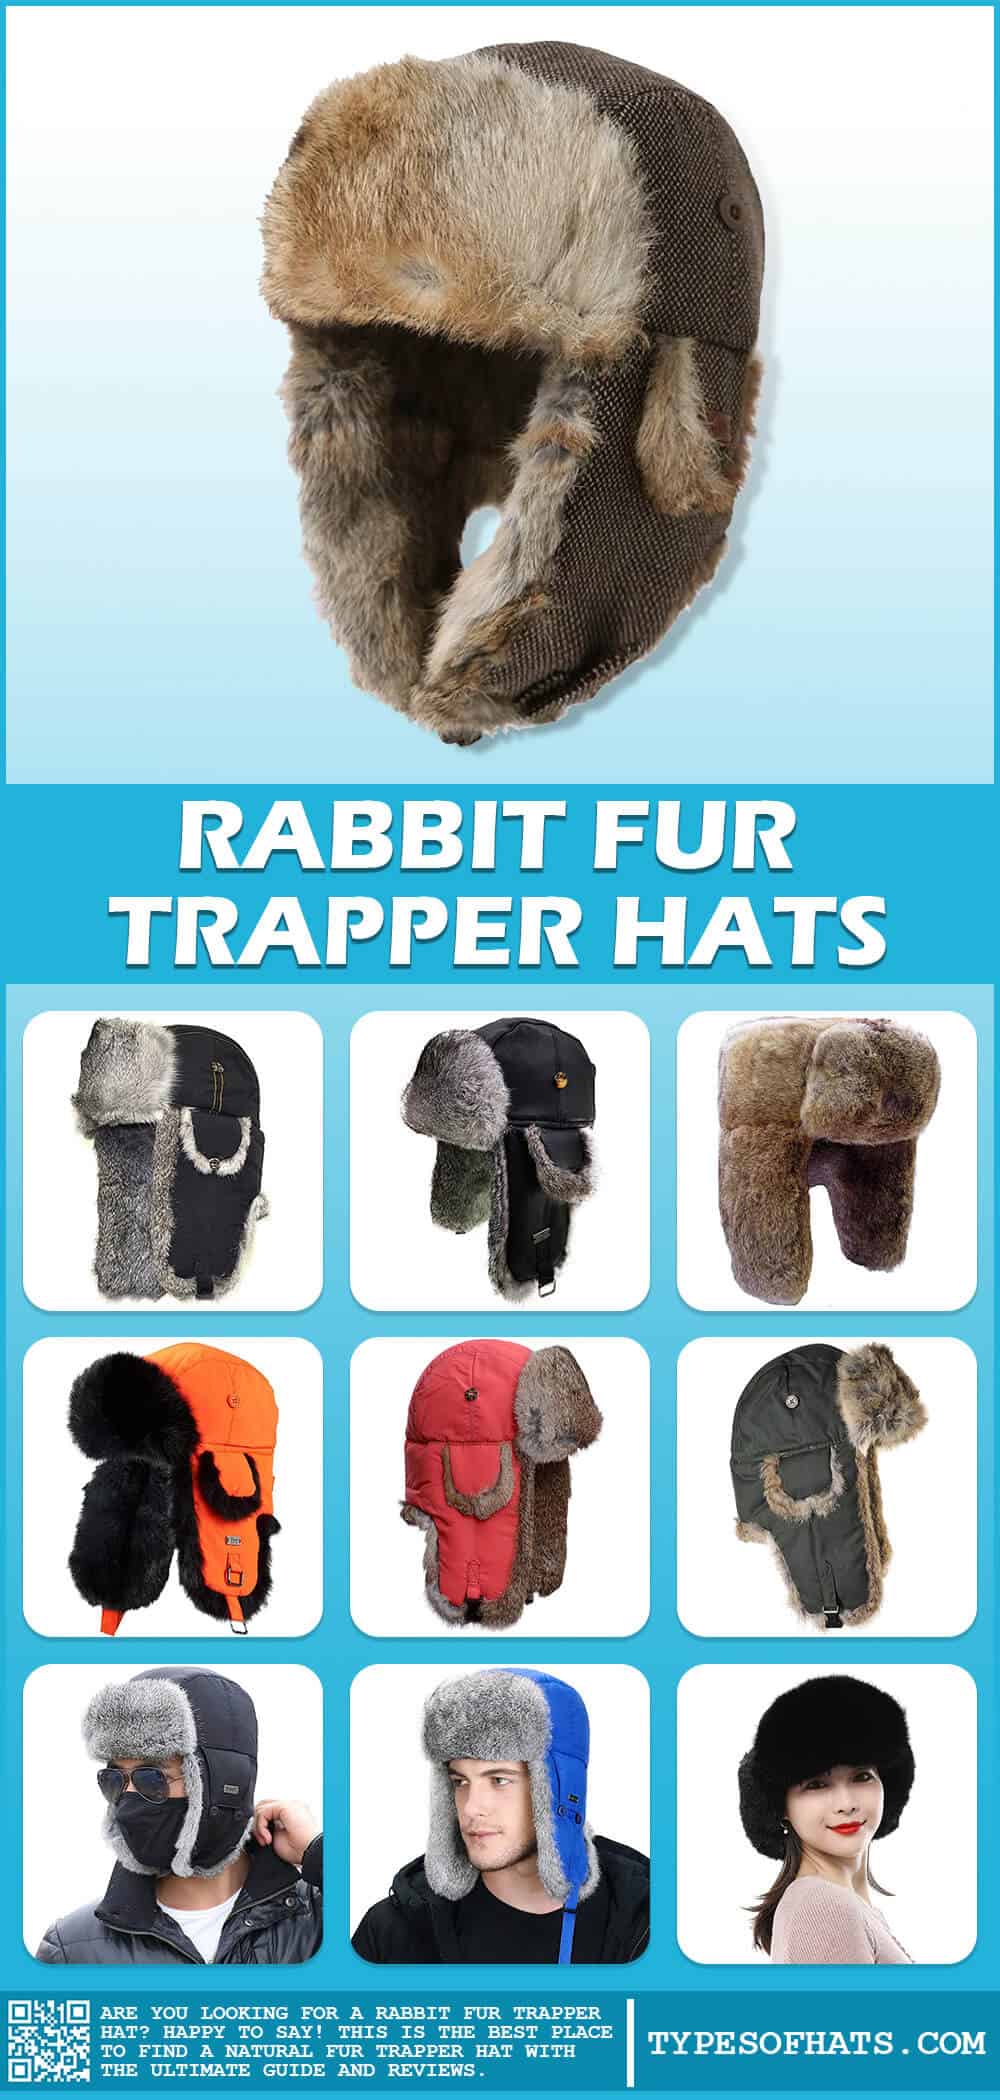 rabbit fur trapper hats info